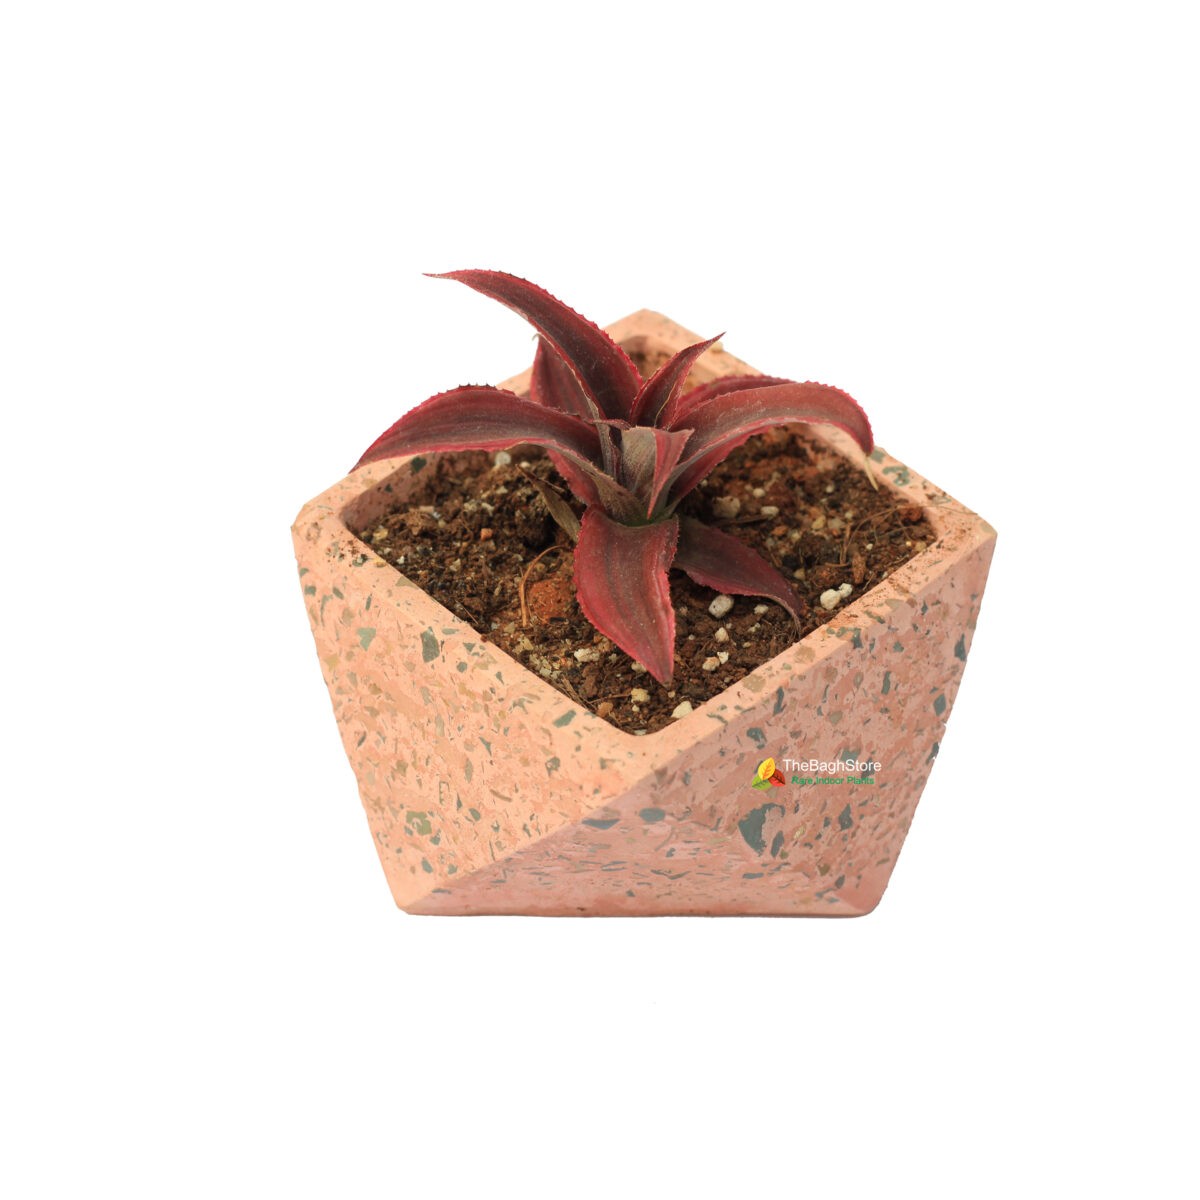 cryptanthus bivittatus in a beautiful brown concrete pot